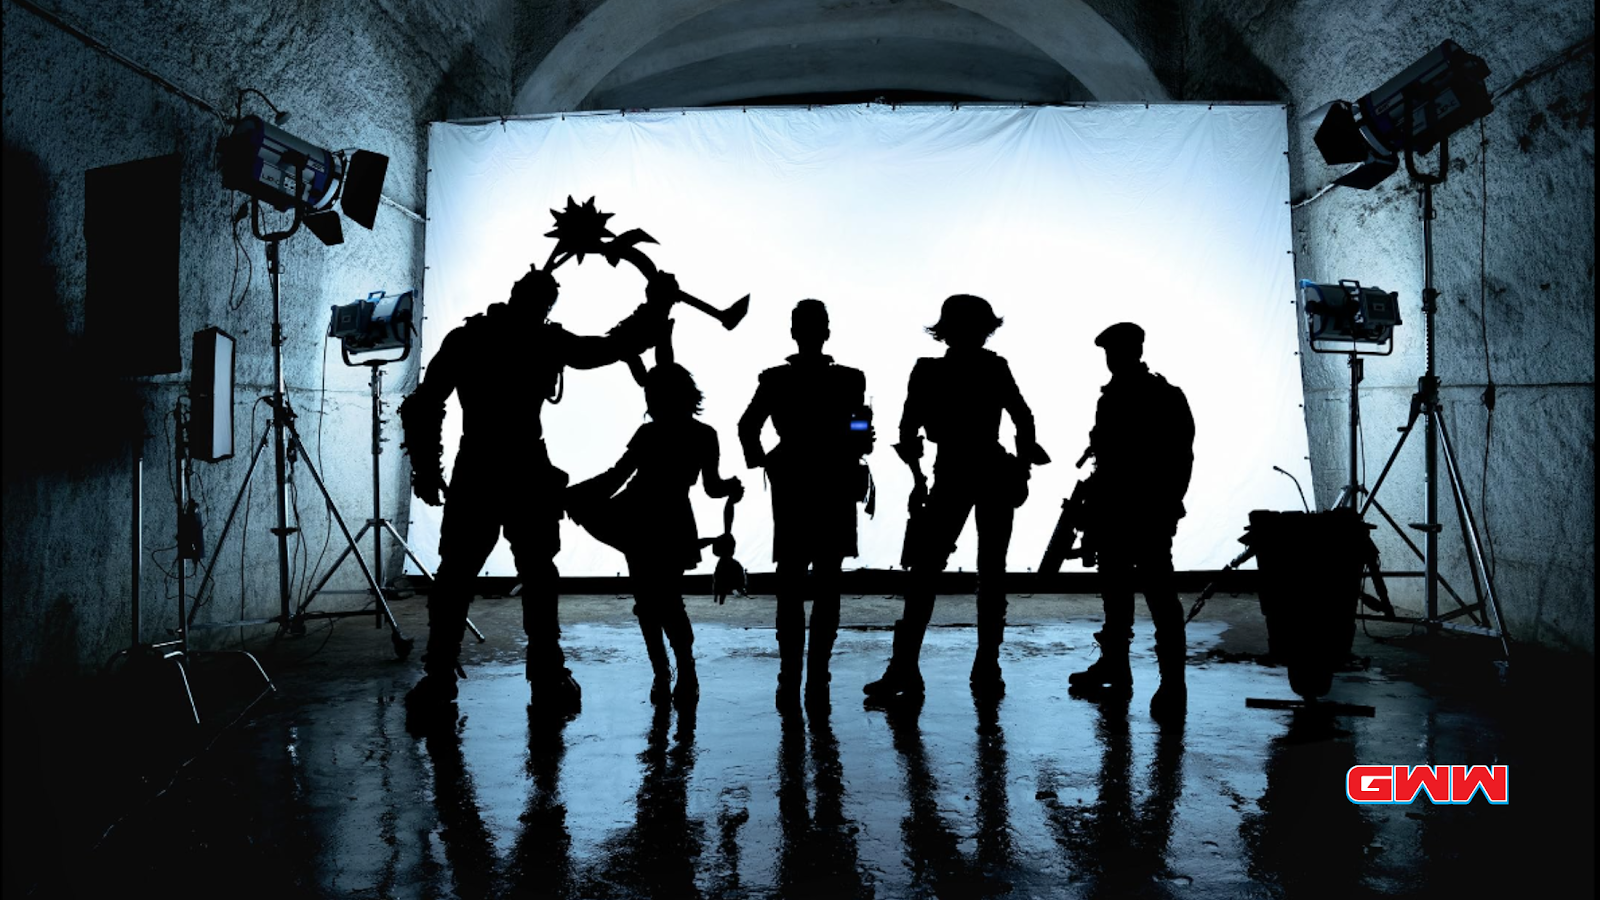 Silhouettes of main cast of Borderlands, Borderlands movieSiluetas del protagonista de Borderlands, fecha de lanzamiento de la película  release date 